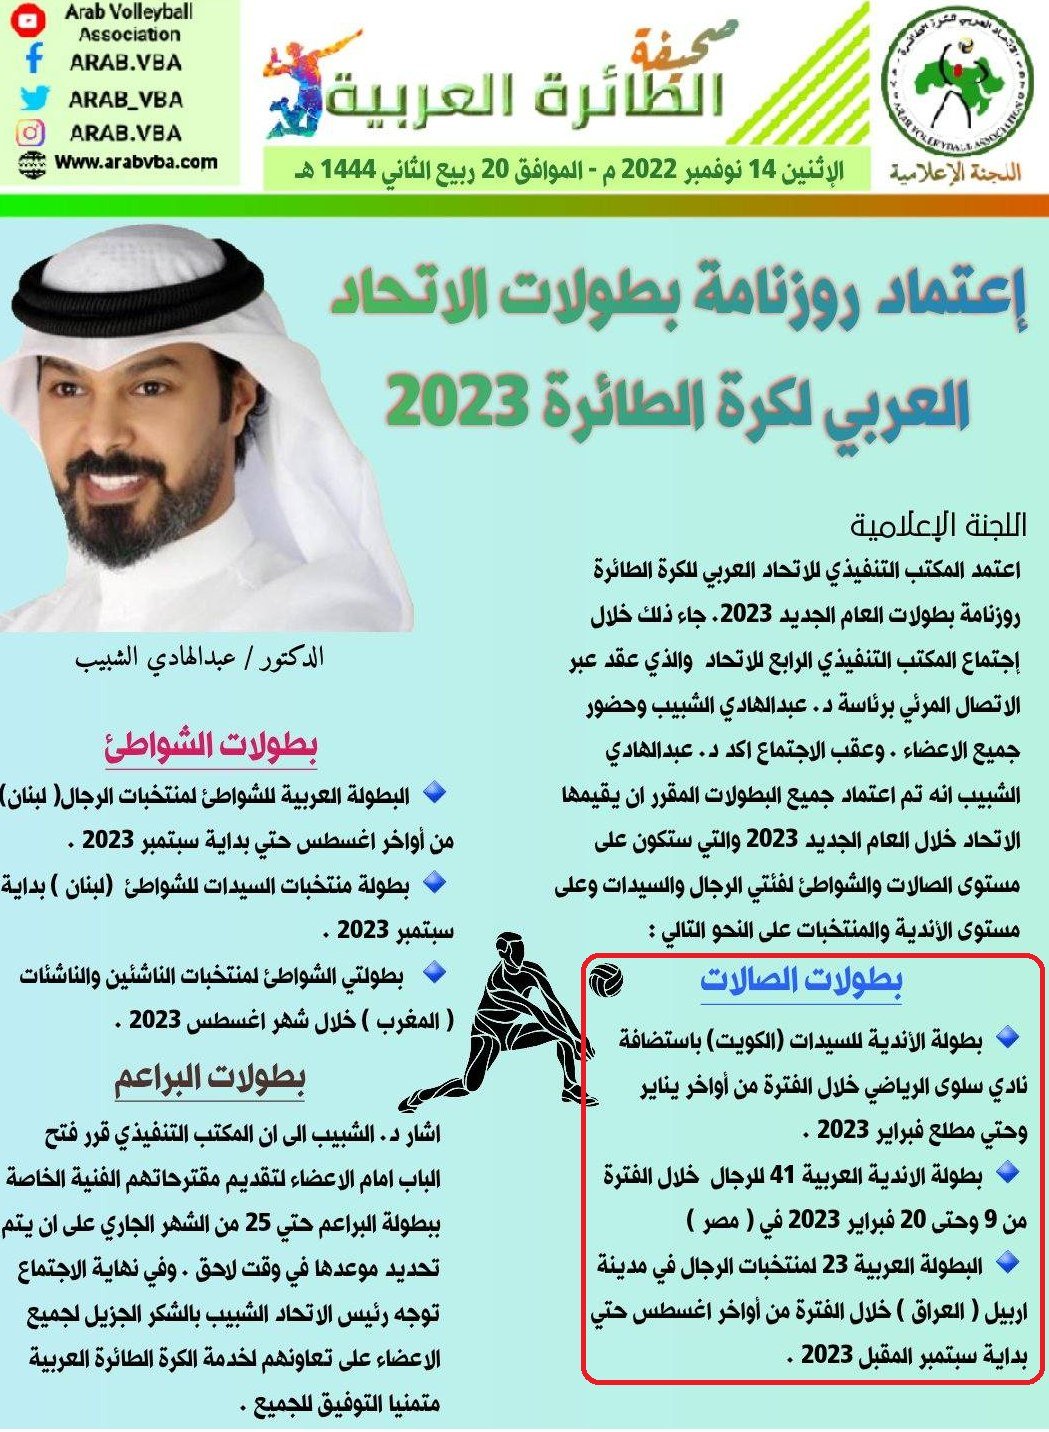 بالتفاصيل.. أين ستقام البطولات العربية للكرة الطائرة للأندية والمنتخبات 2023؟